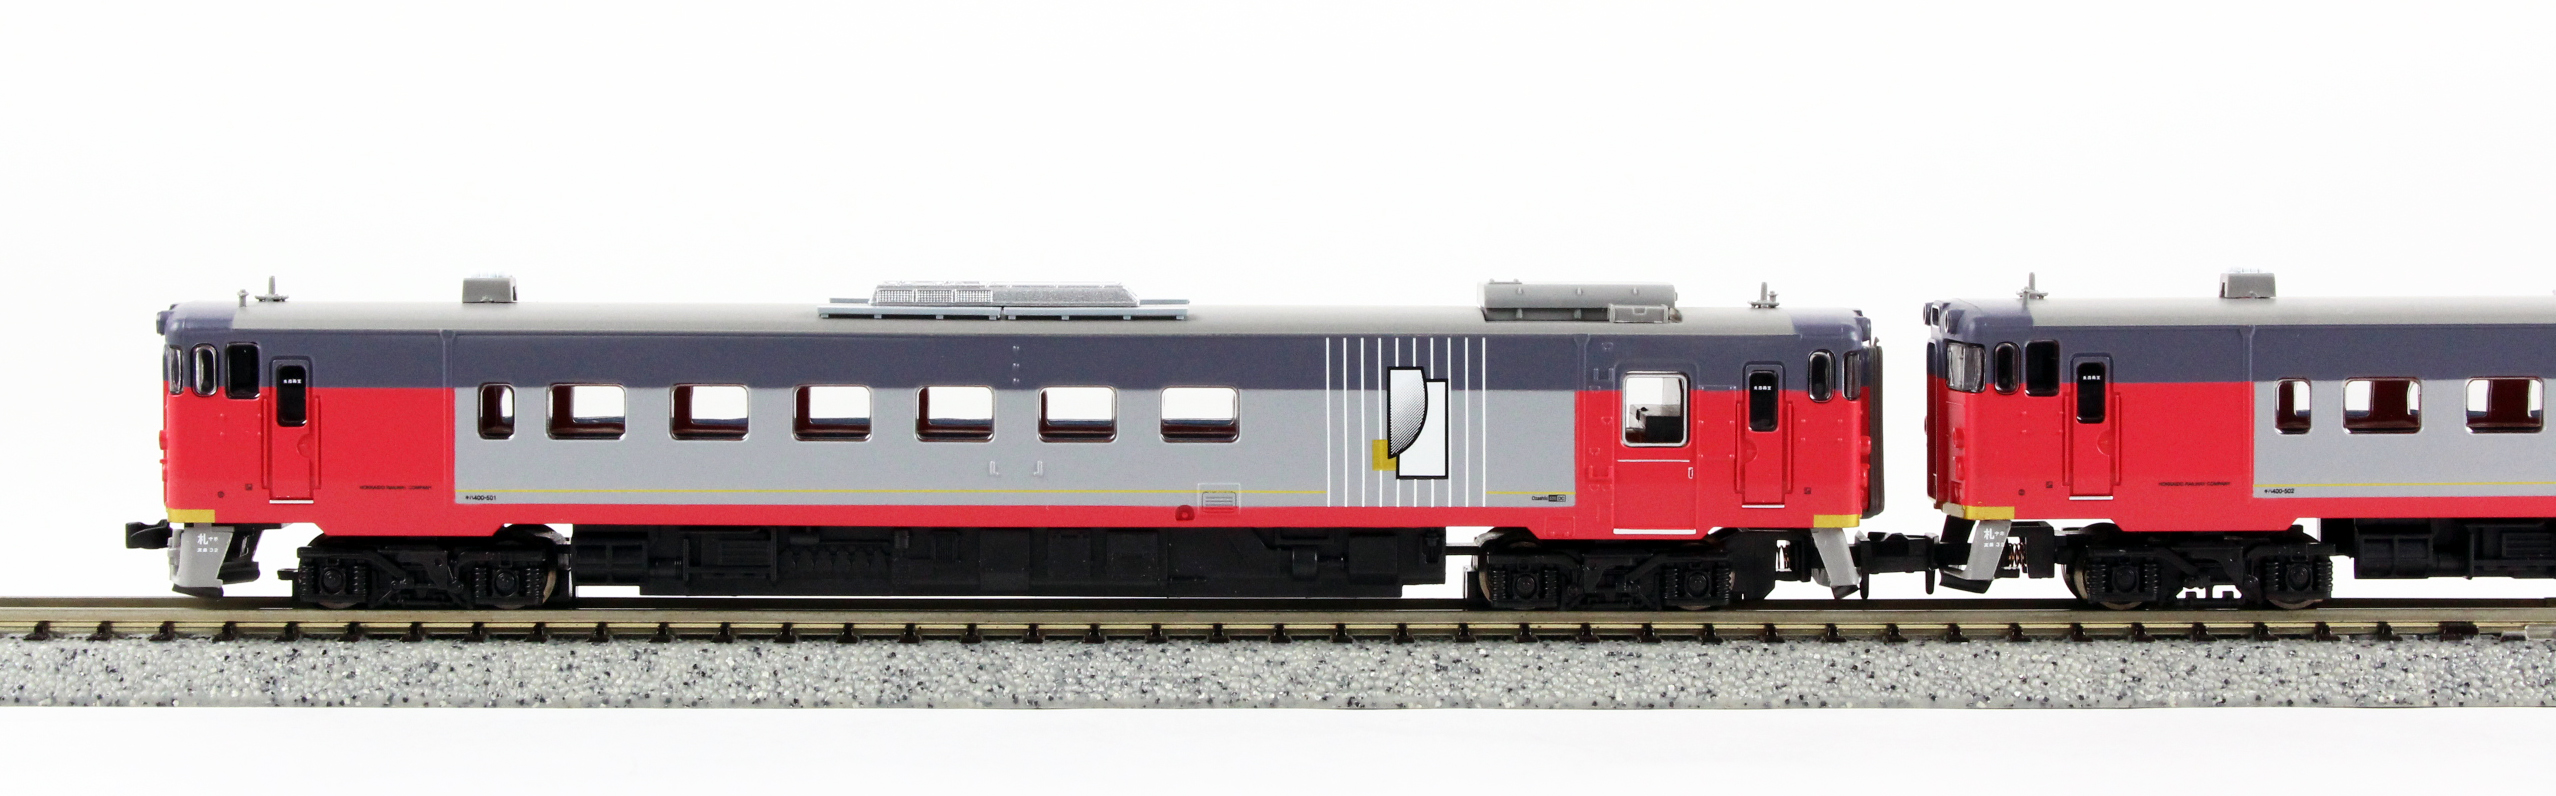 マイクロエース キハ400系500番台 お座敷 - 鉄道模型